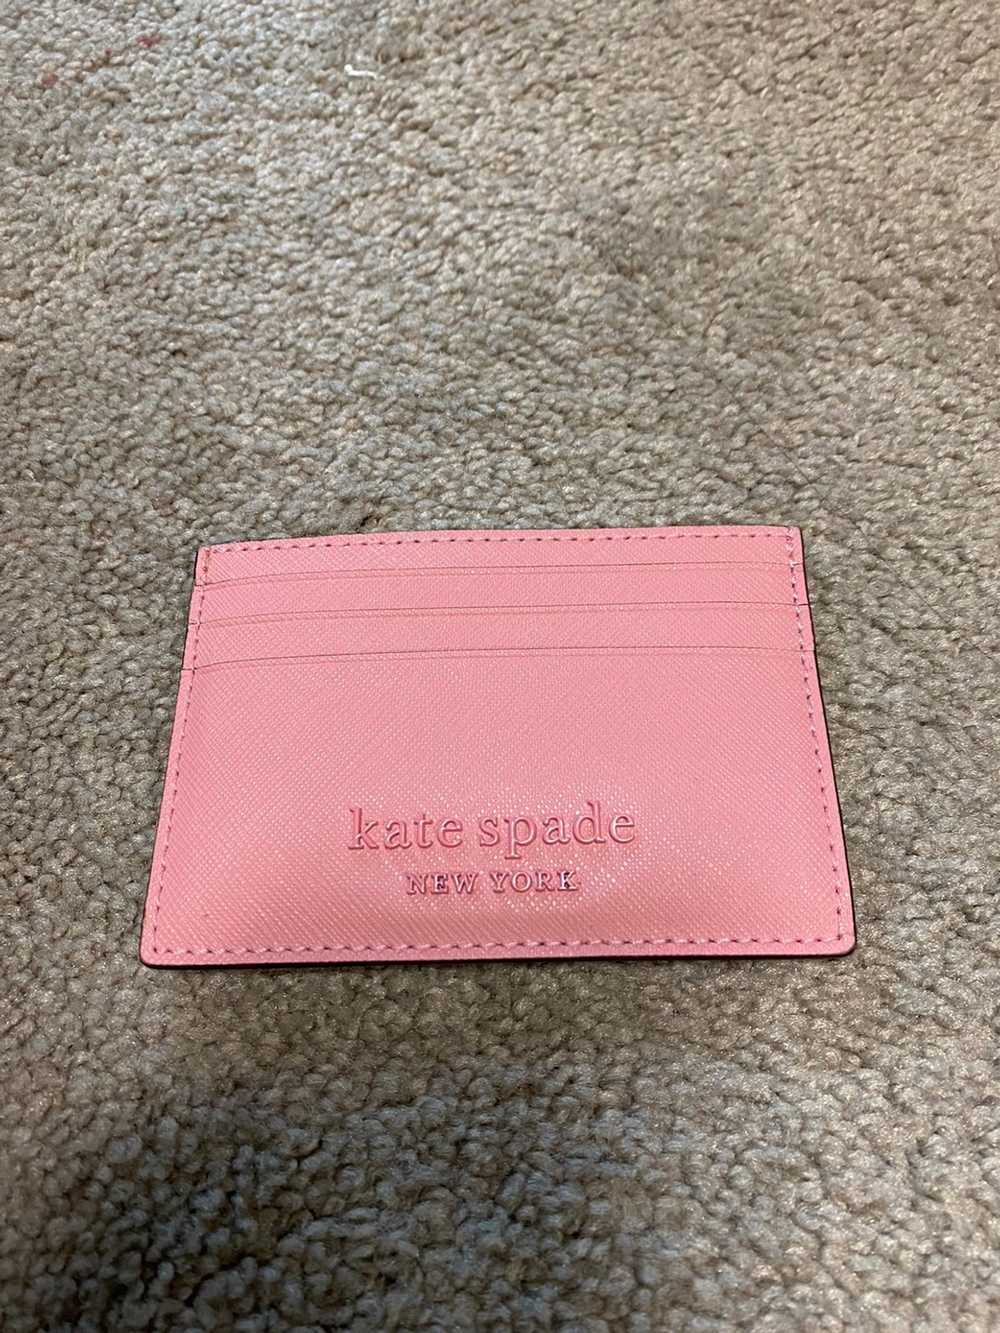 Kate Spade Kate spade card wallet - image 1